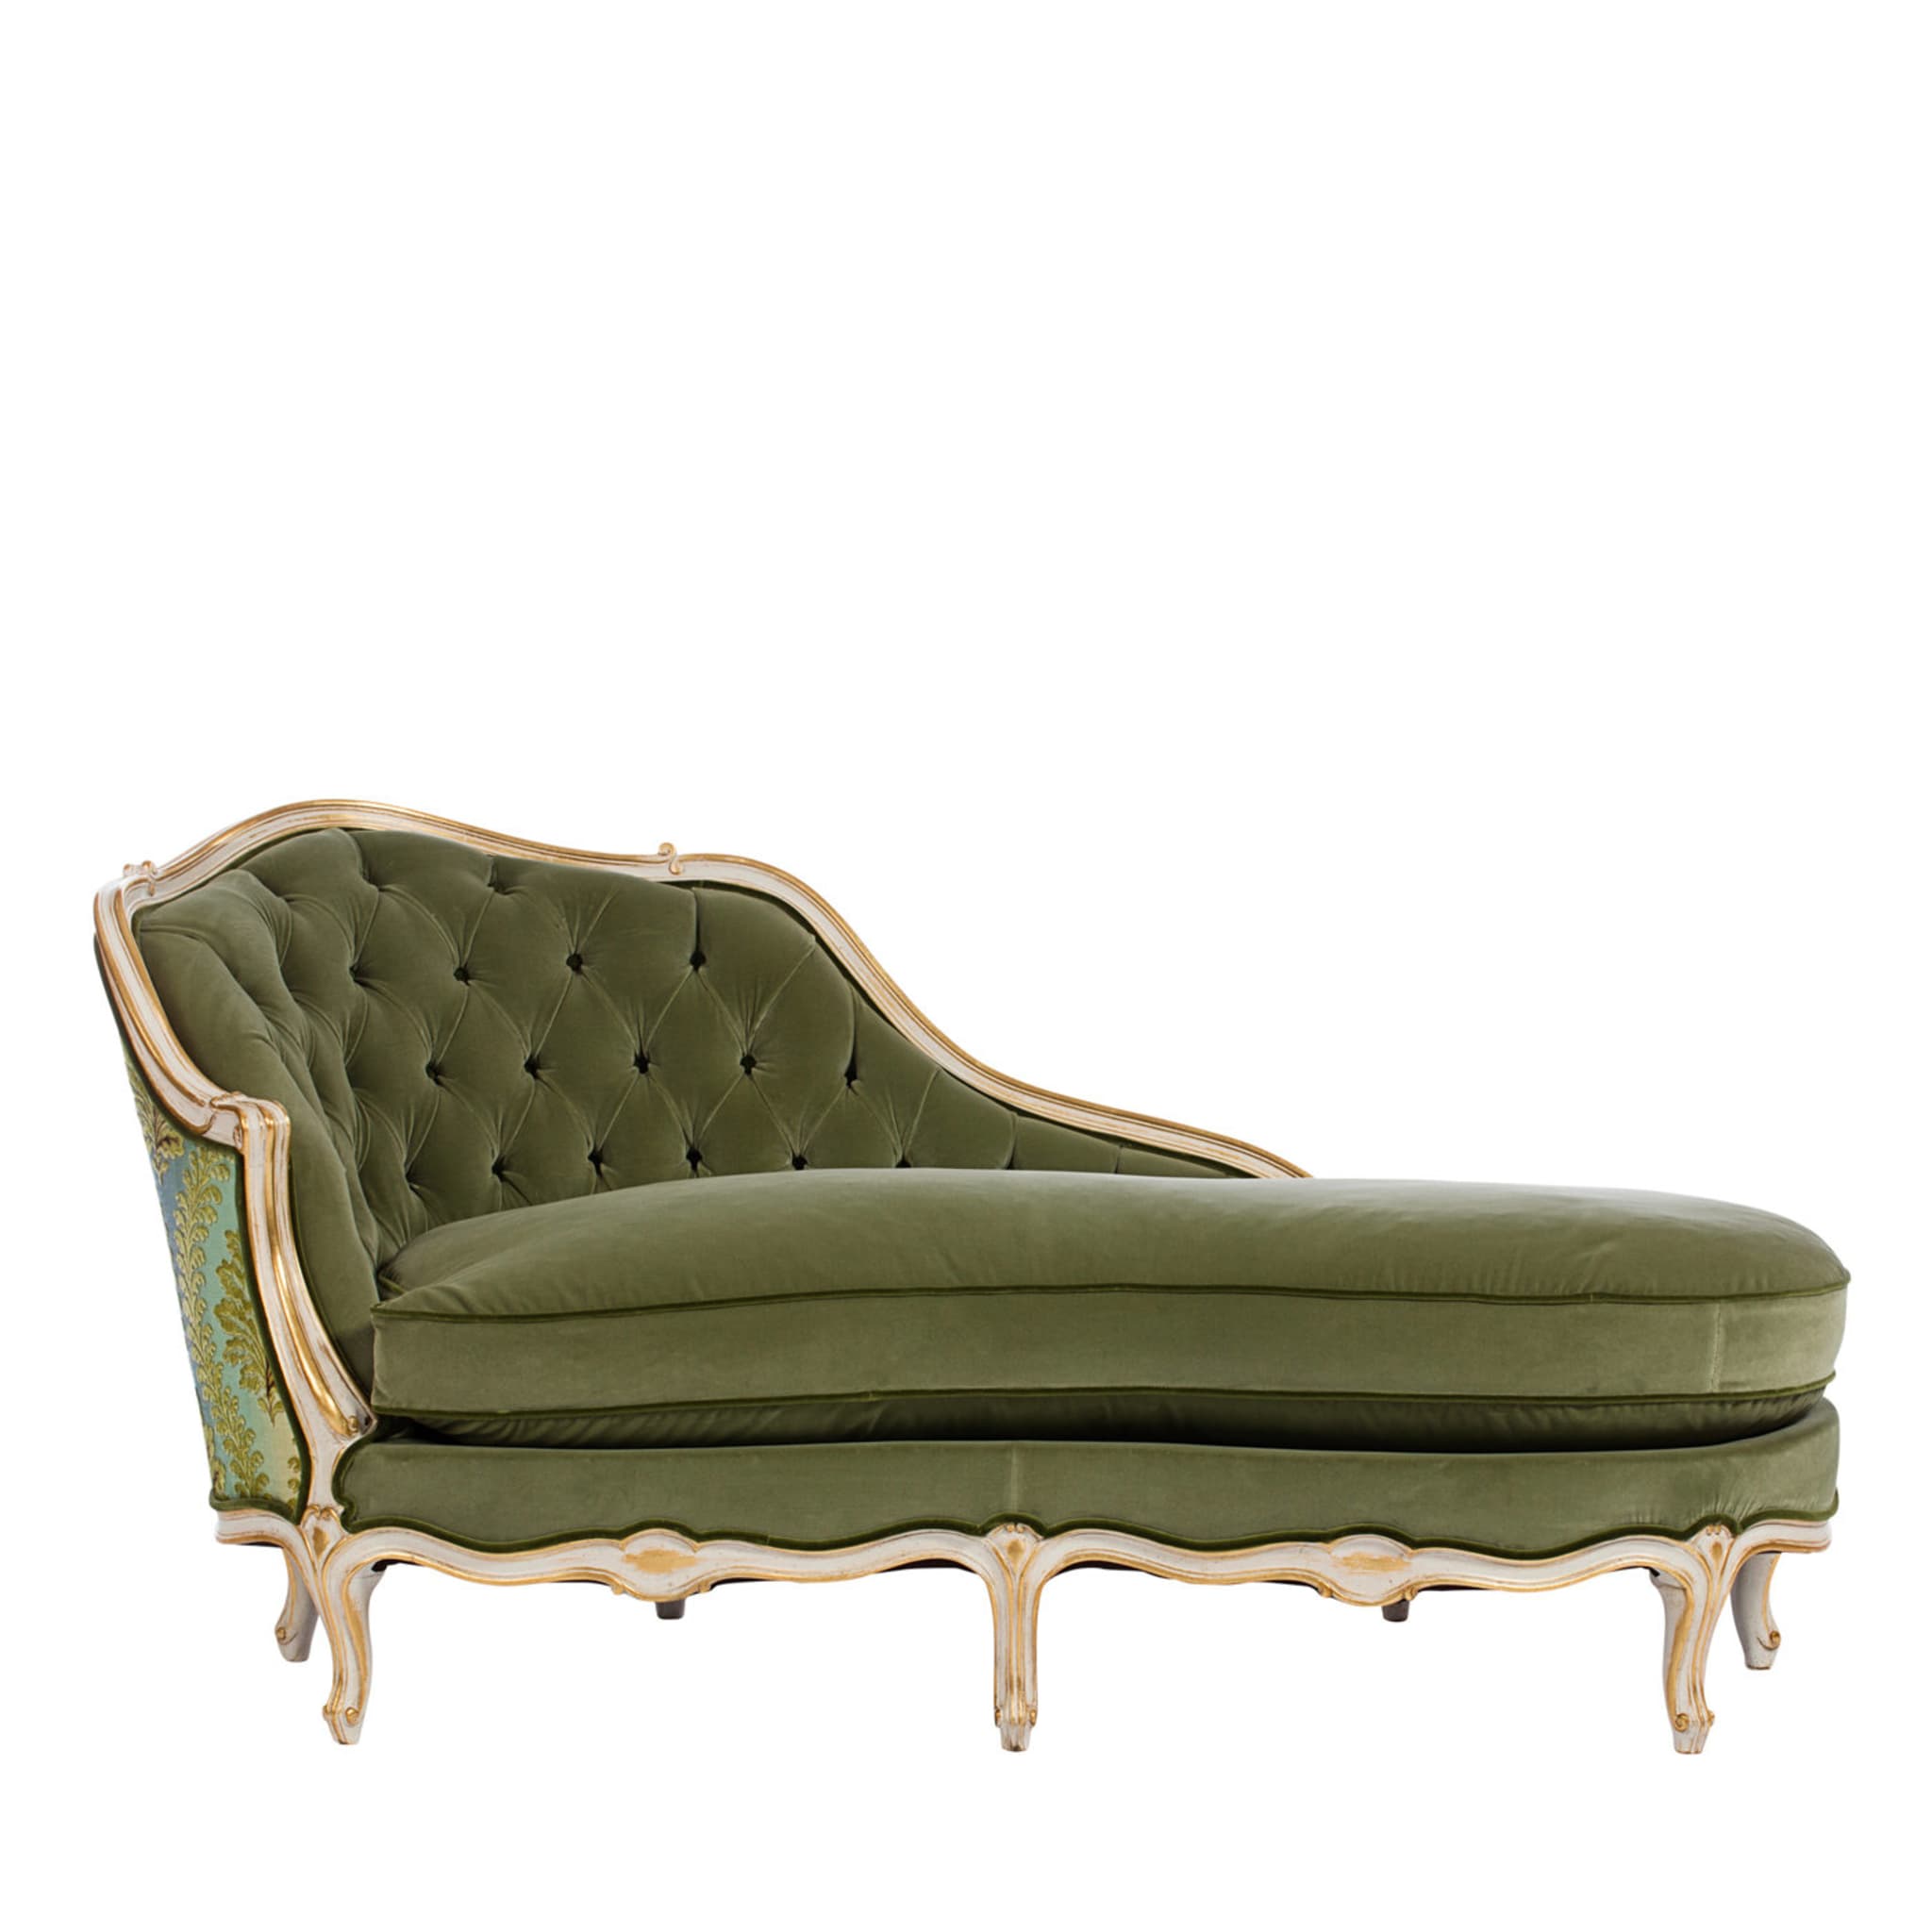 Green Chaise-longue Louis XV - Main view